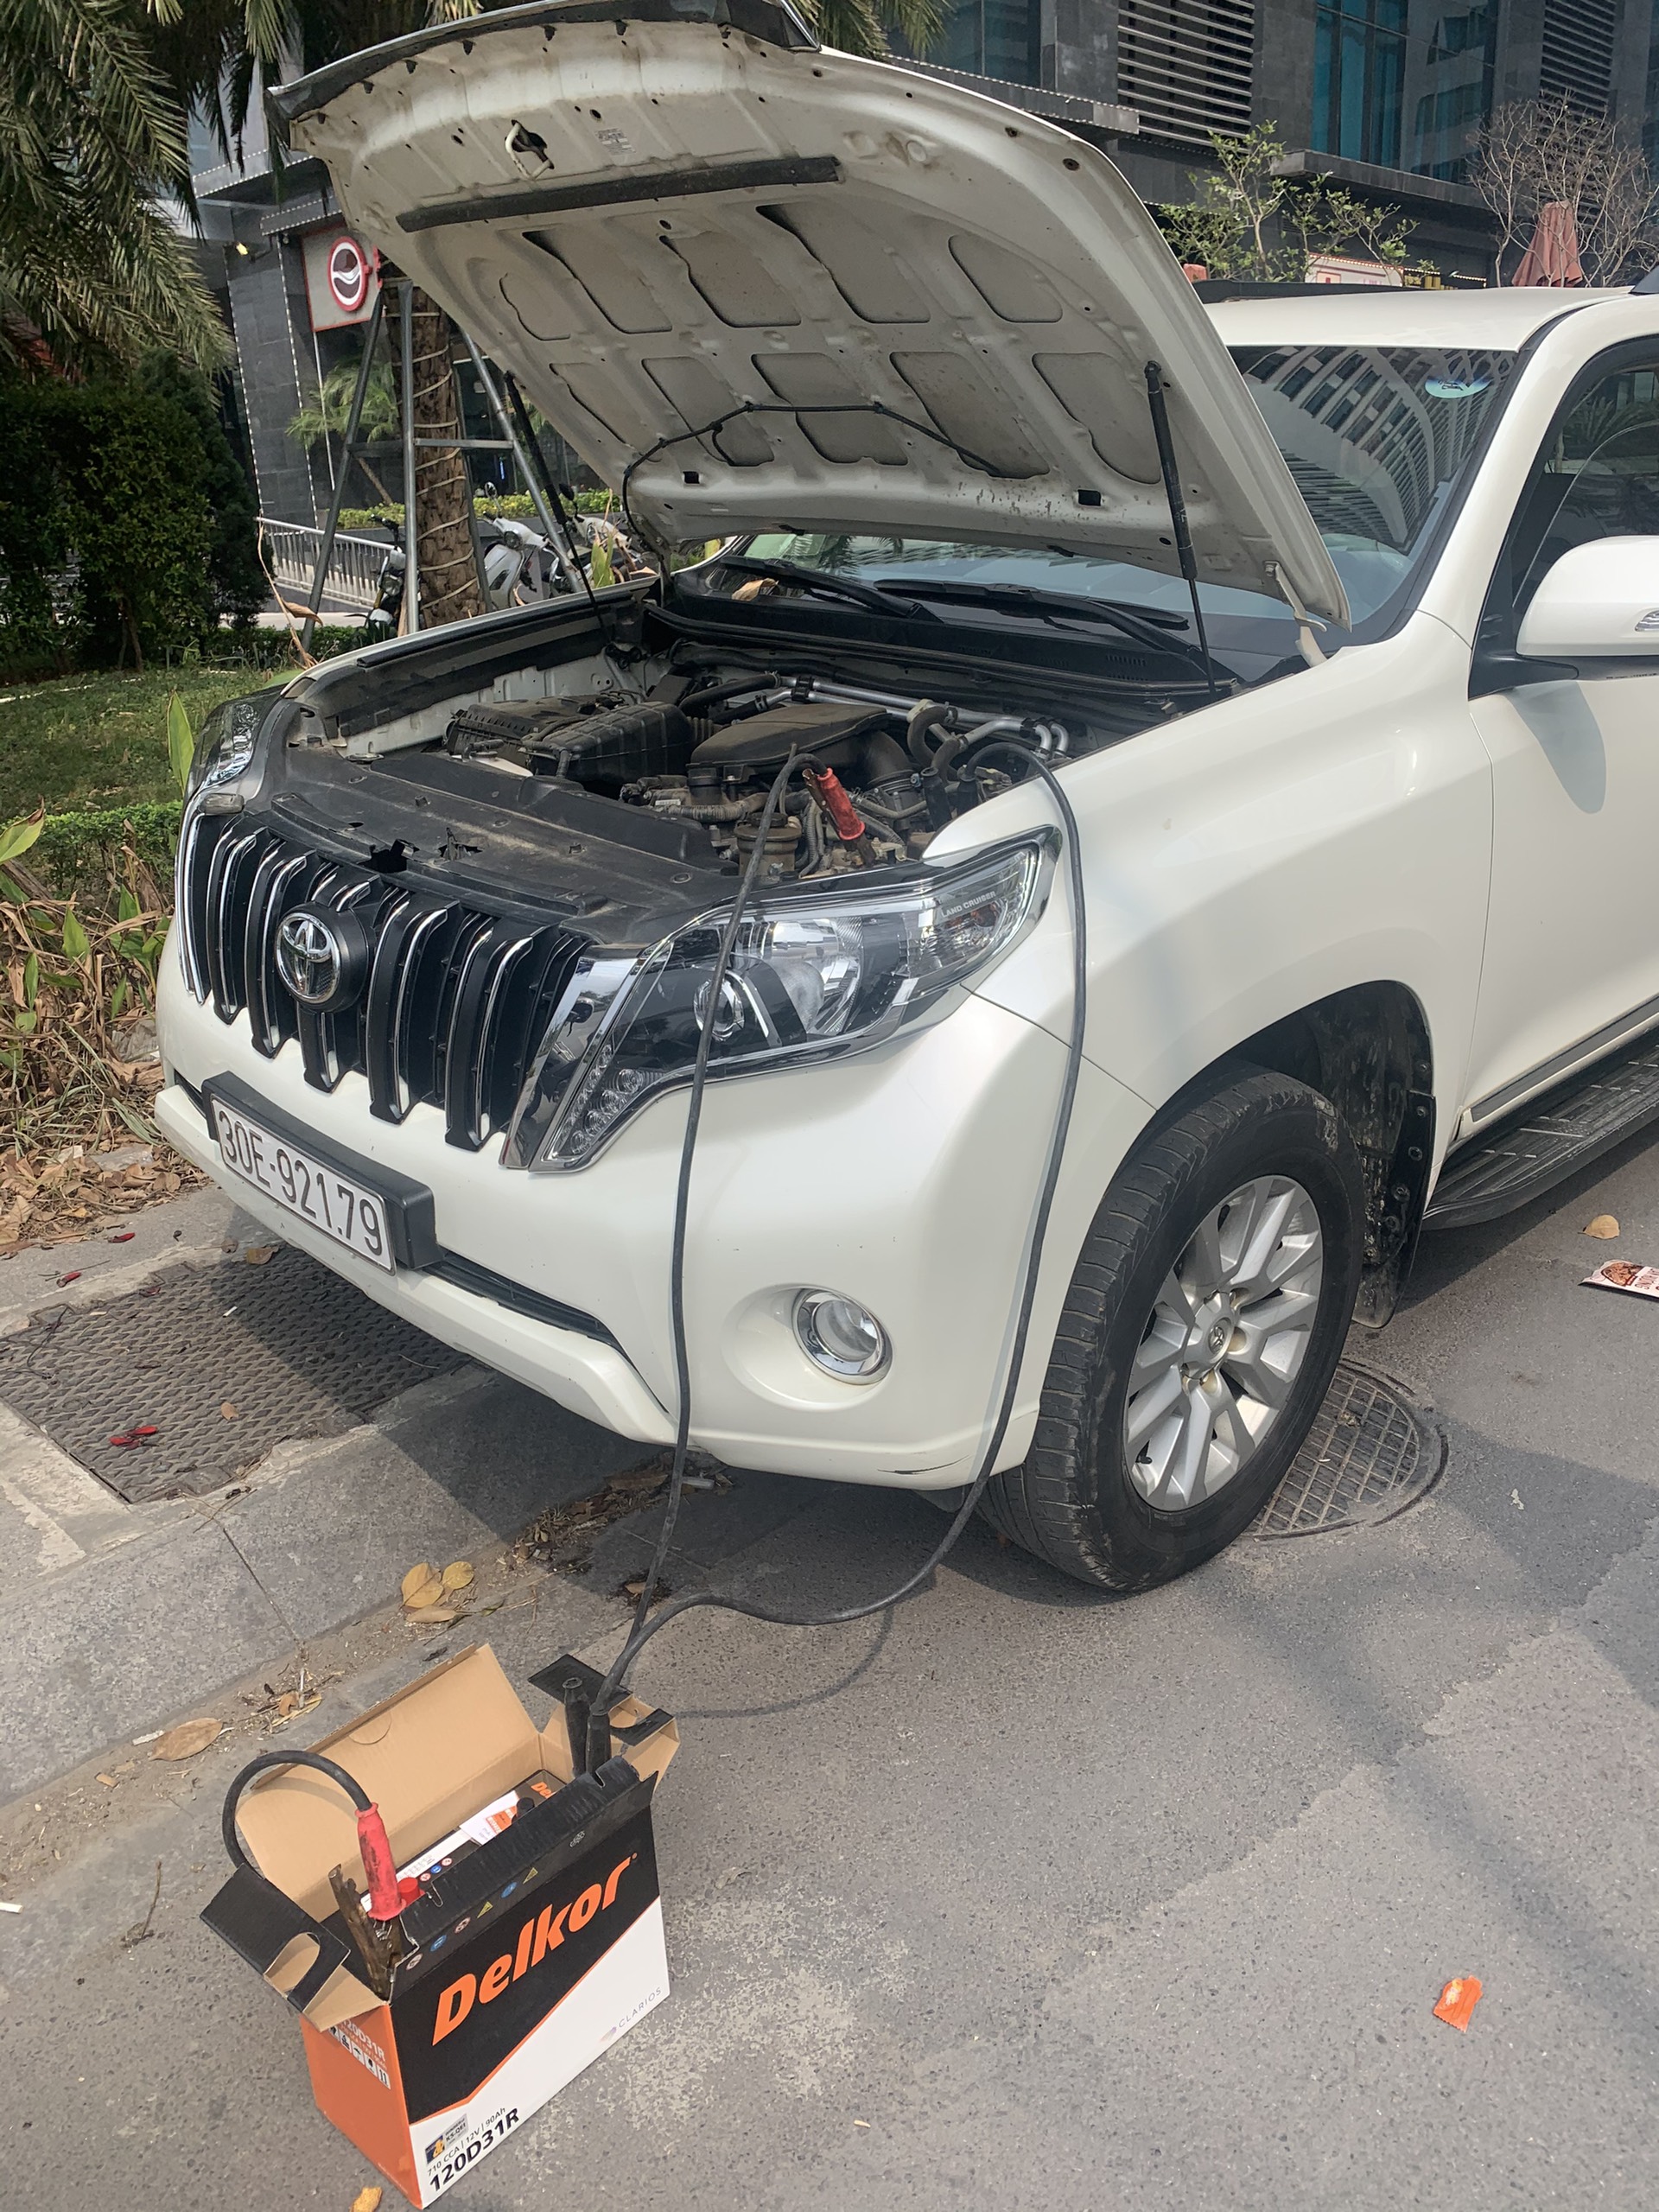 Cứu hộ câu Kích sạc thay bình ắc quy ô tô tại Quận Tân Bình TP HCM